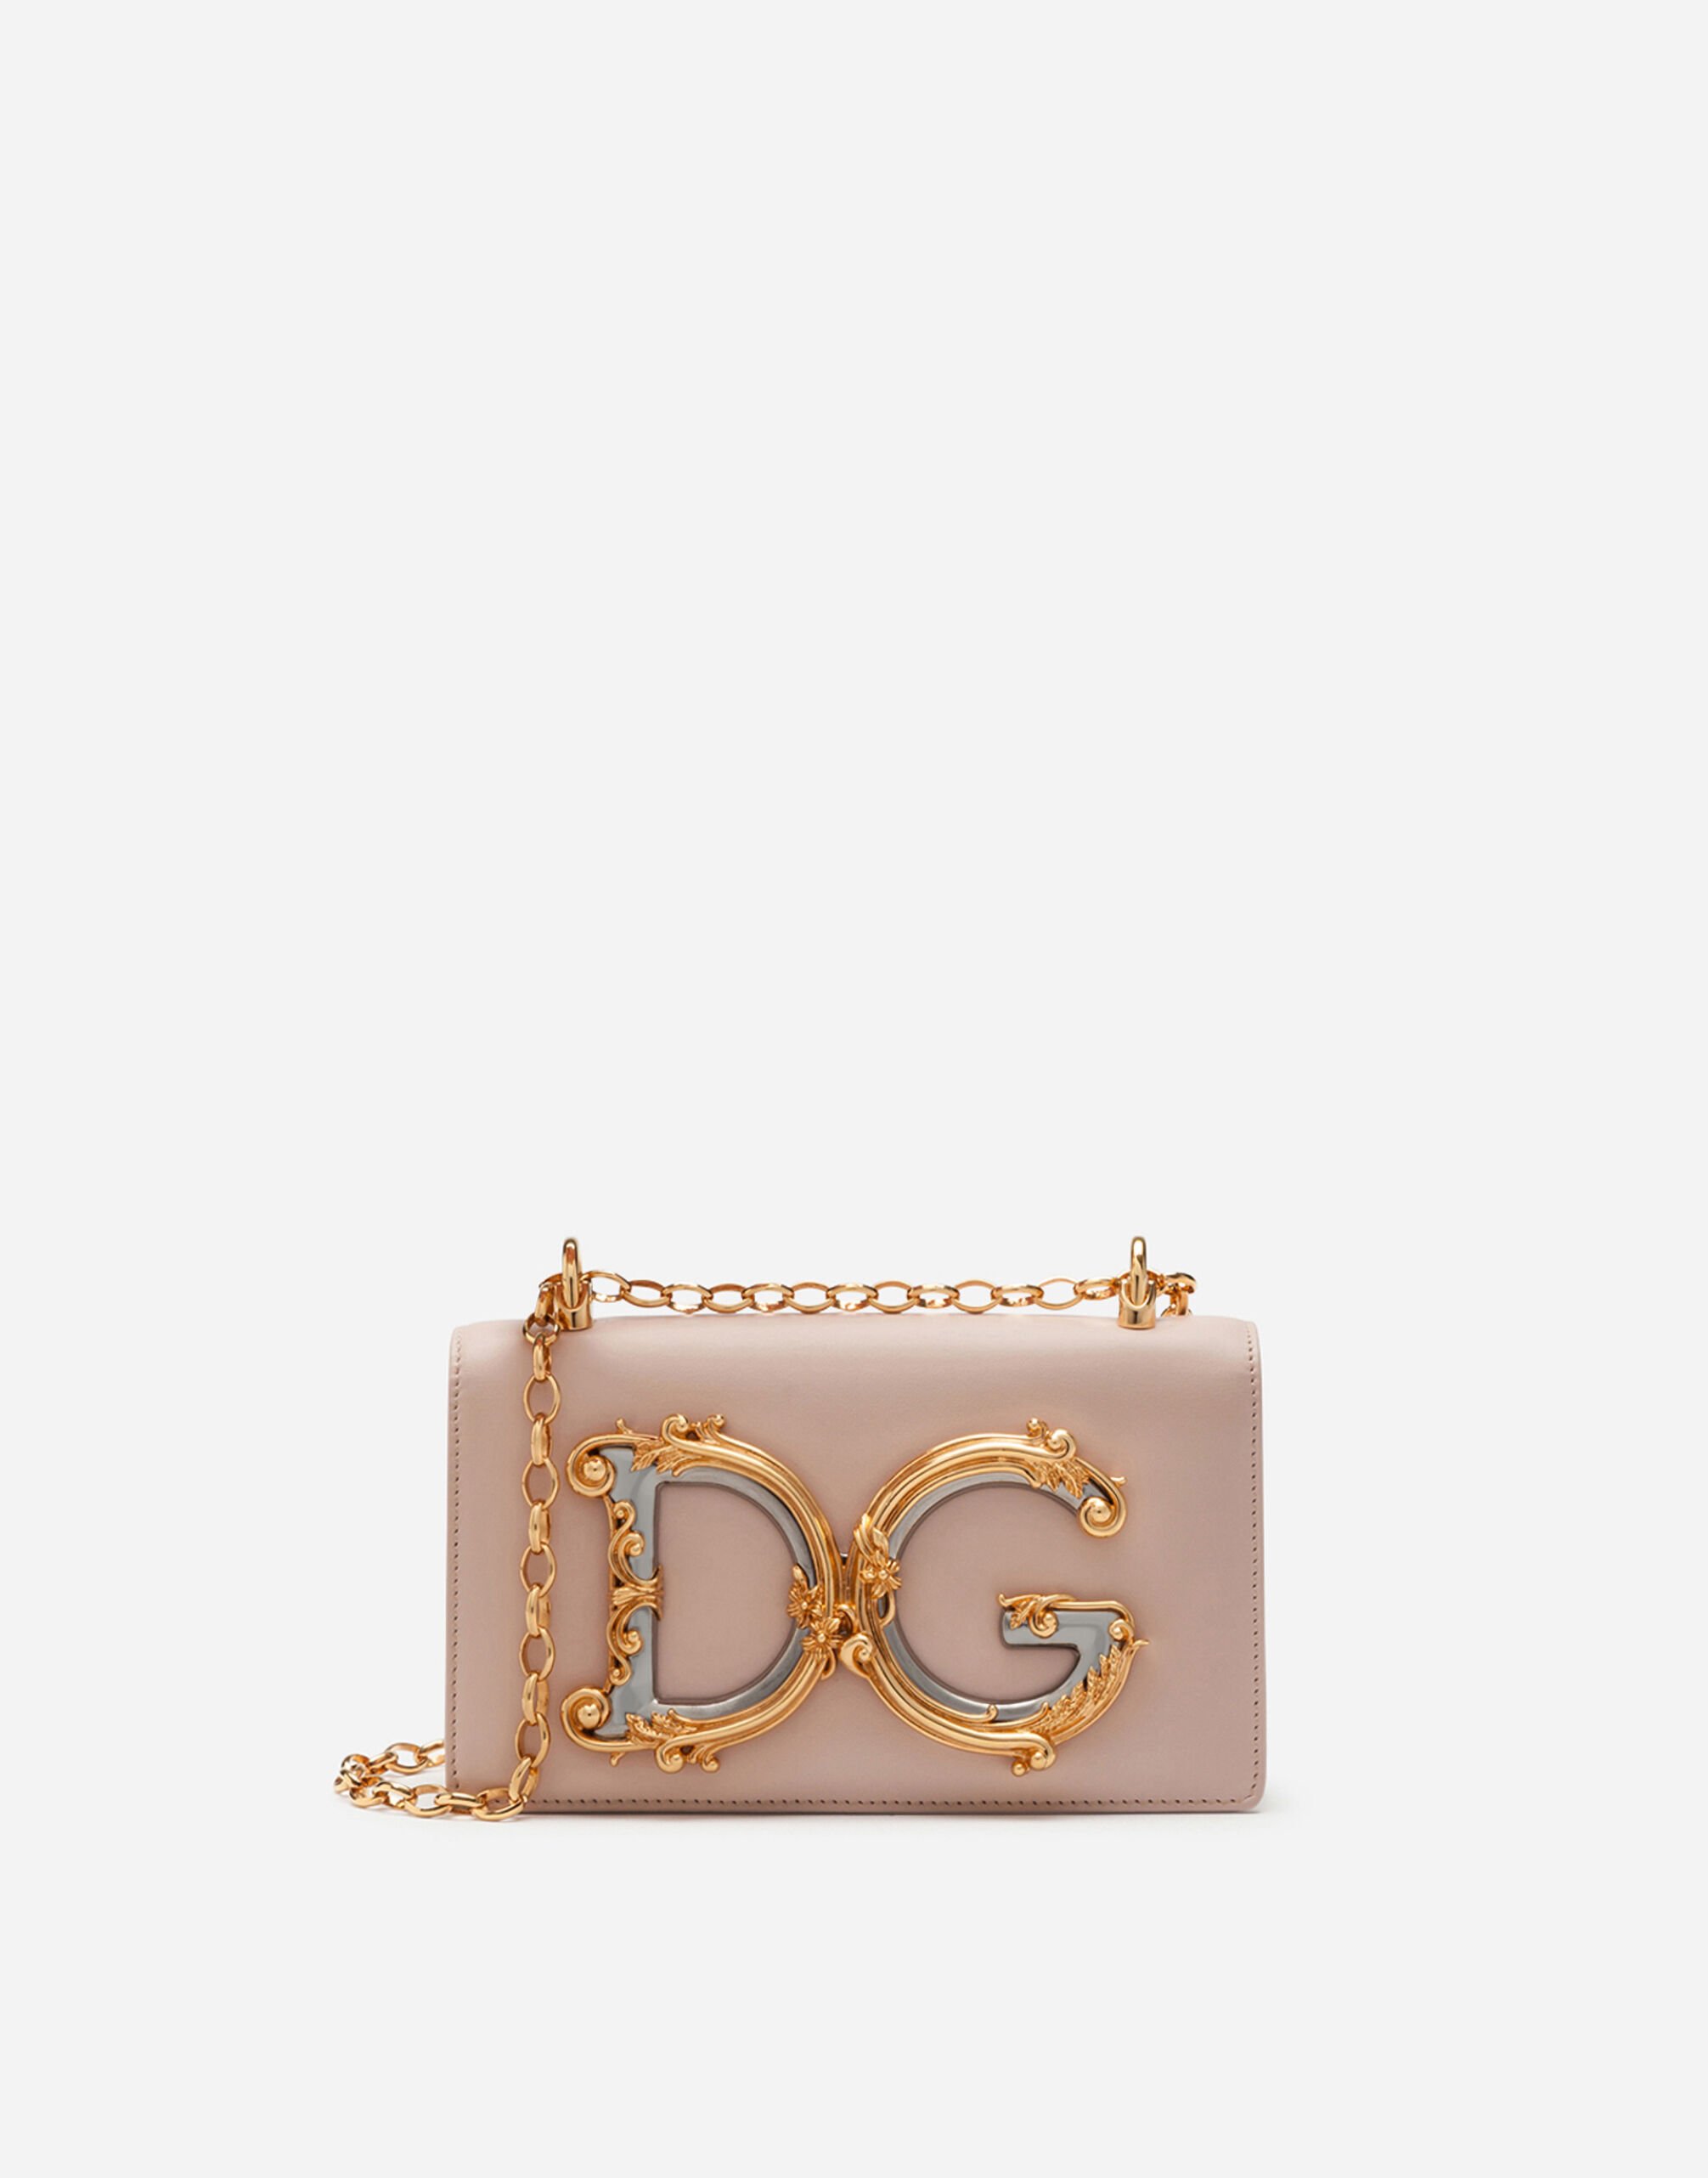 Dolce & Gabbana Phone bag DG Girls aus kalbsleder ROSA BB6003A1001